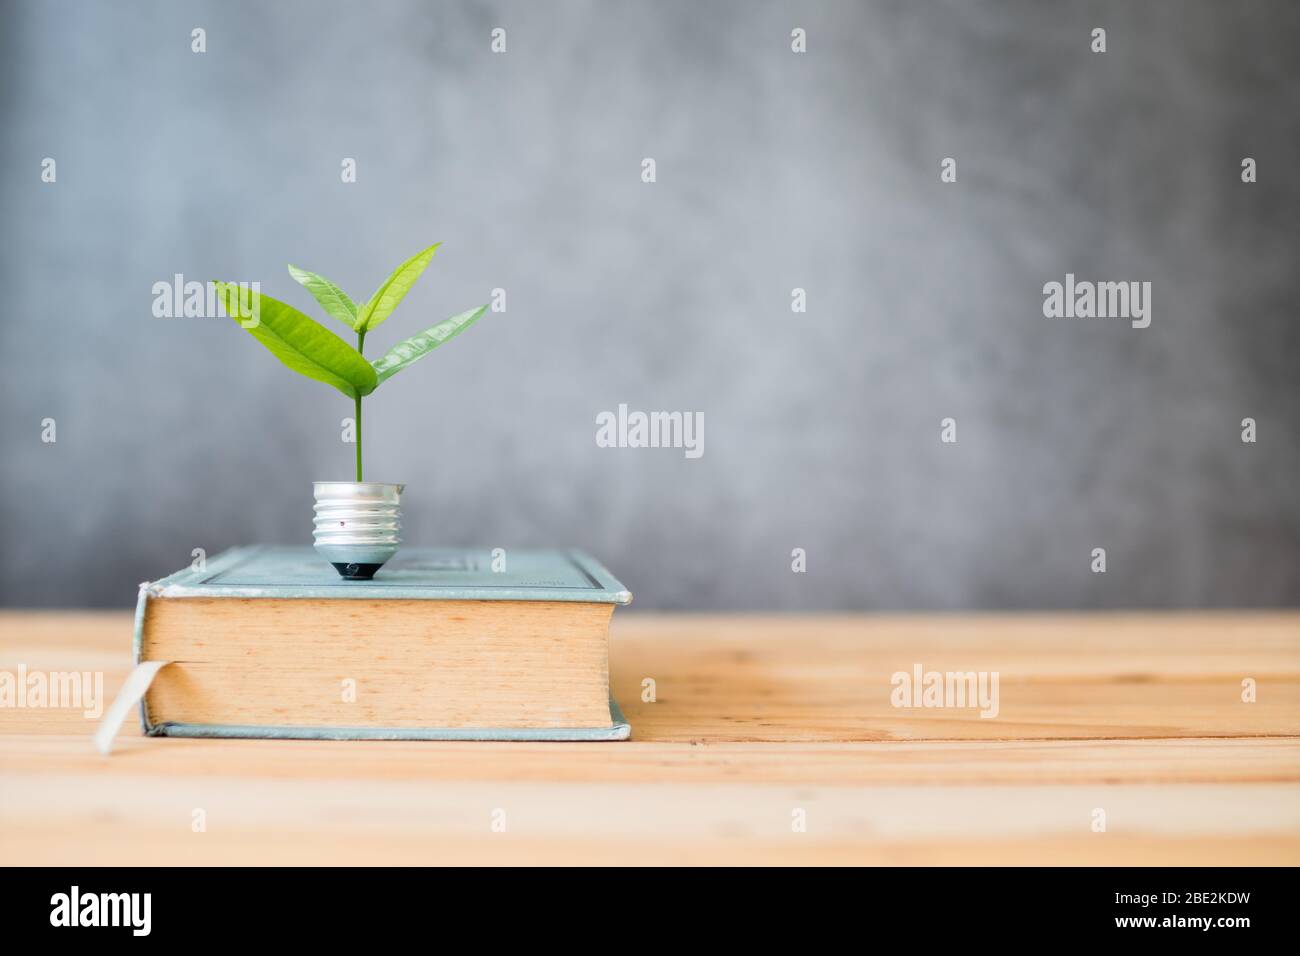 conoscenza crescente su concetto, piccolo albero si sviluppa dalla lampadina di illuminazione e grande libro sul tavolo Foto Stock